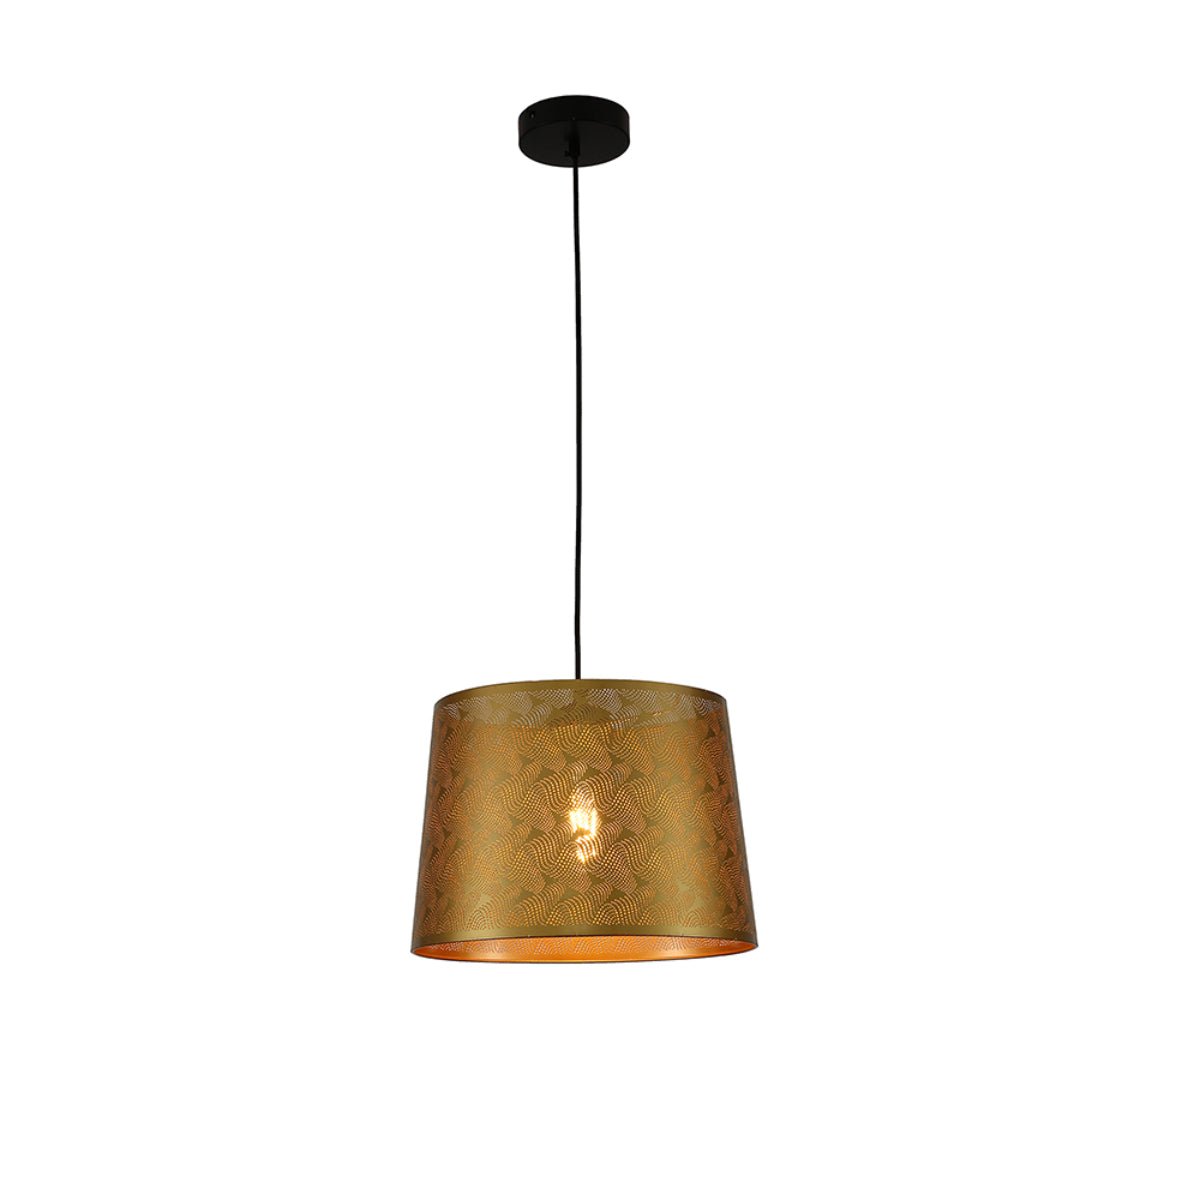 Main image of Golden Metal Frustum Pendant Ceiling Light with E27 | TEKLED 150-17978